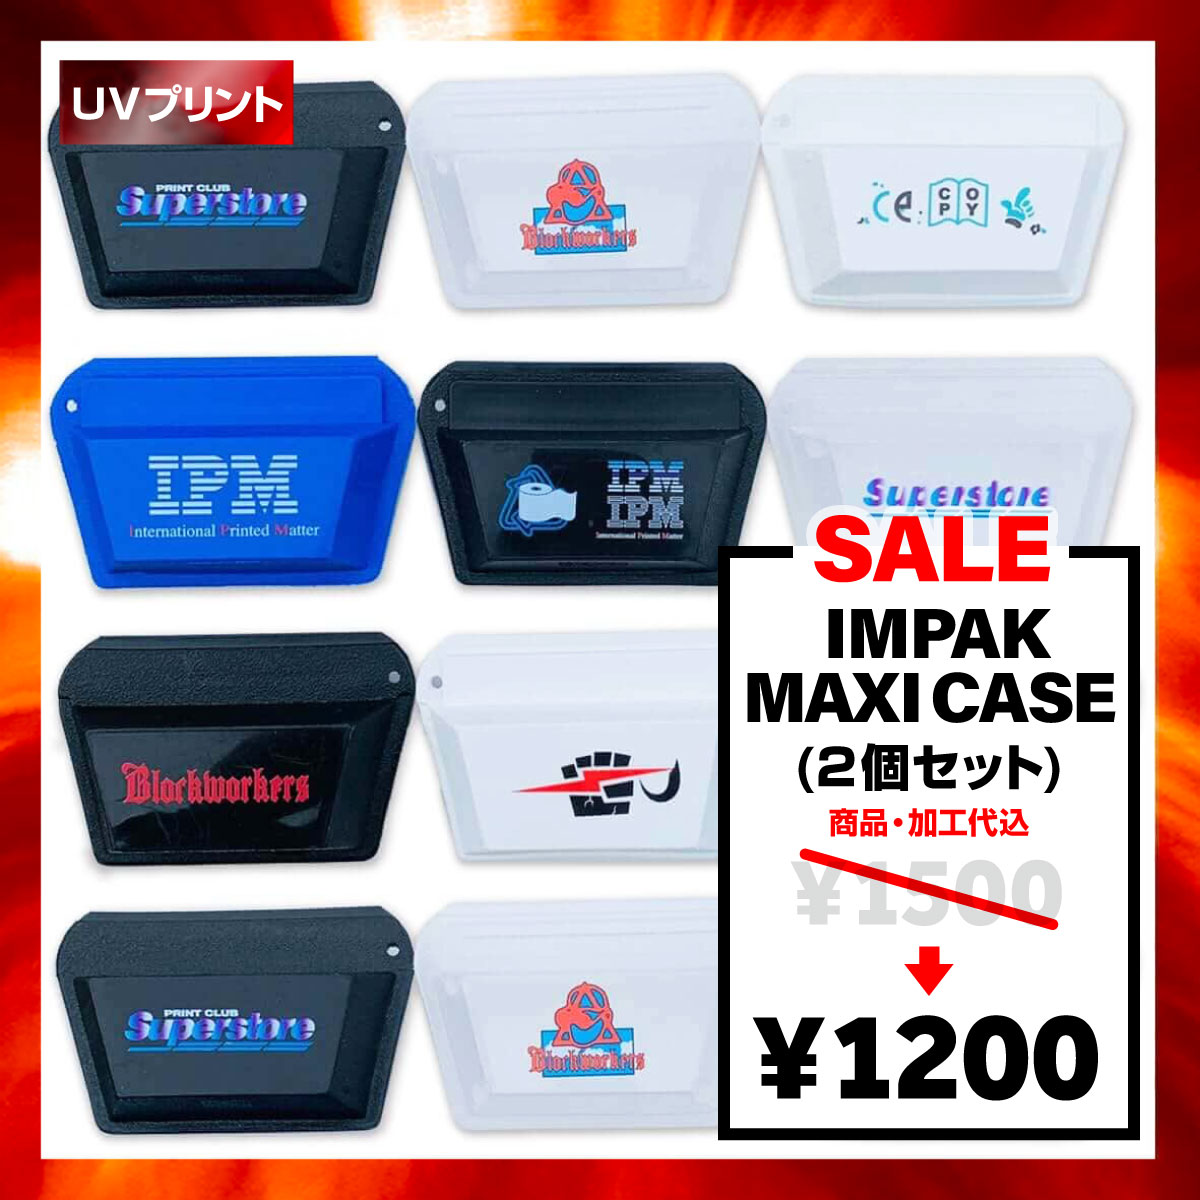 【在庫限り SALE】 Impak Maxi Case <2個セット> (品番3000)